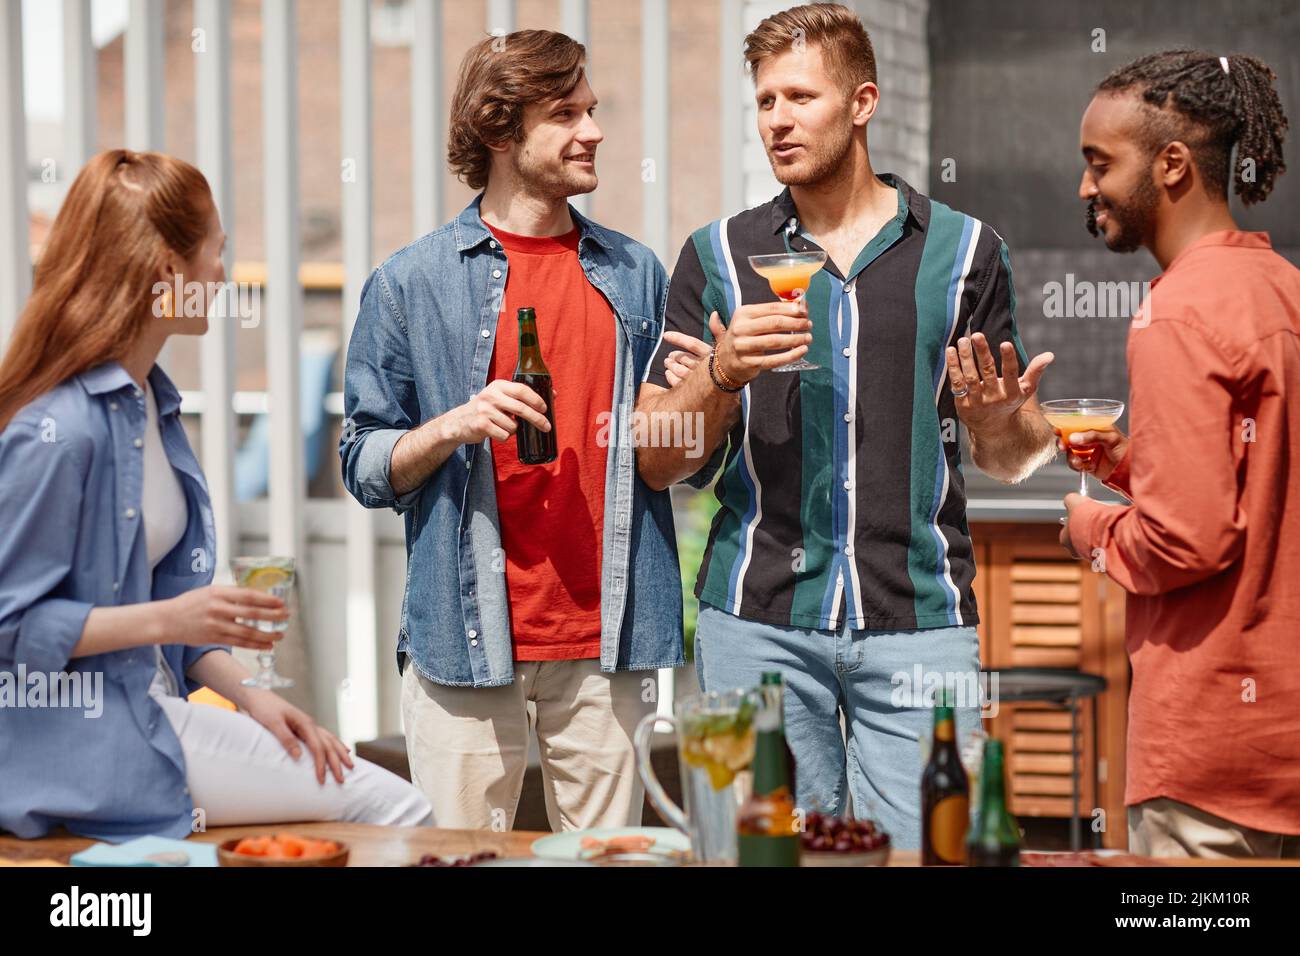 Portrait de deux jeunes hommes accueillant un dîner en plein air avec divers groupes d'amis Banque D'Images